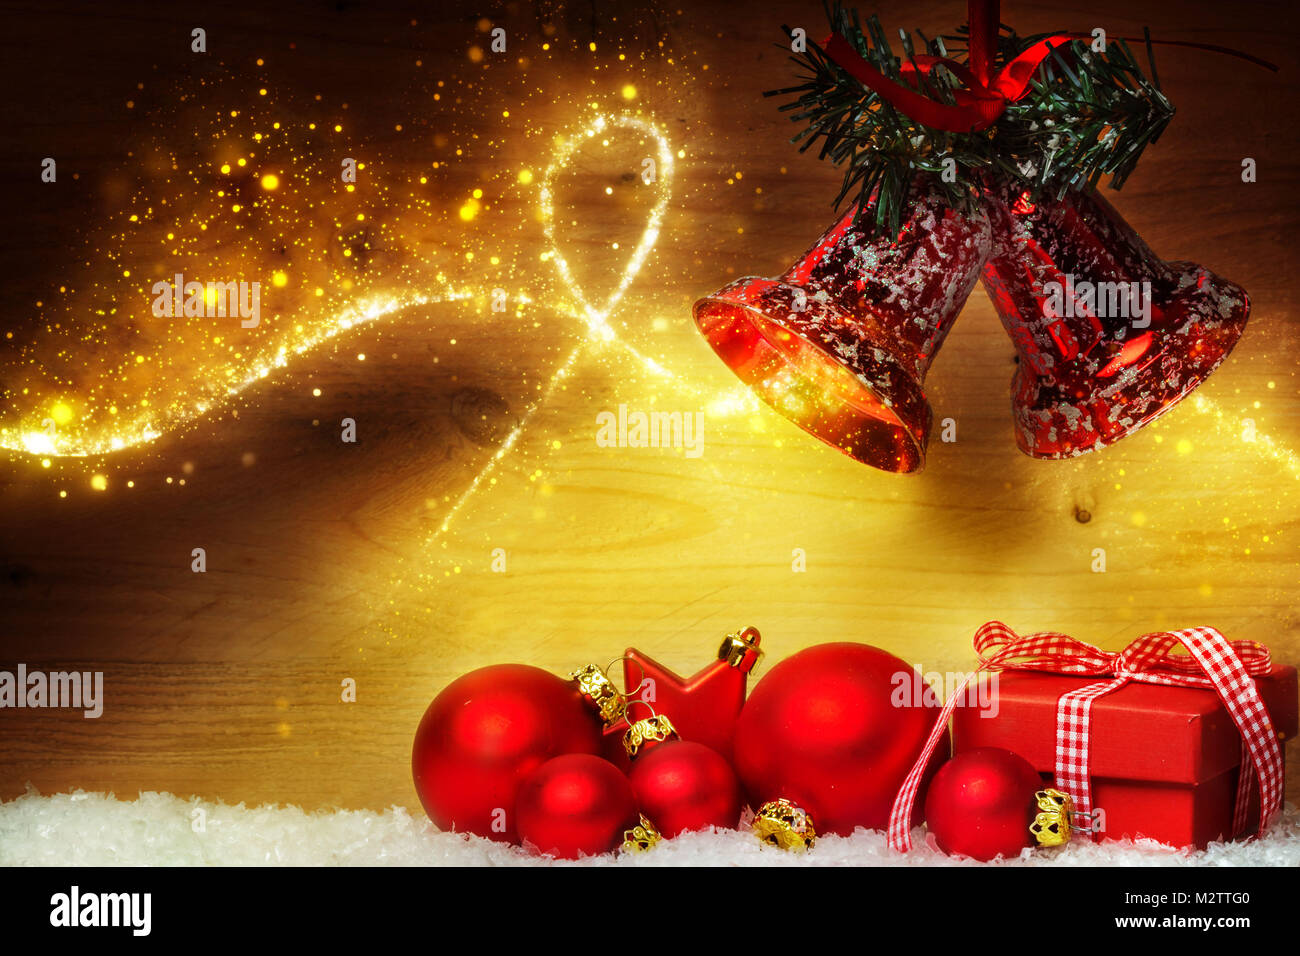 Auguri Di Natale Con Foto.Biglietto Di Auguri Di Natale Decorazione Di Natale Con Le Palle E Le Campane Foto Stock Alamy